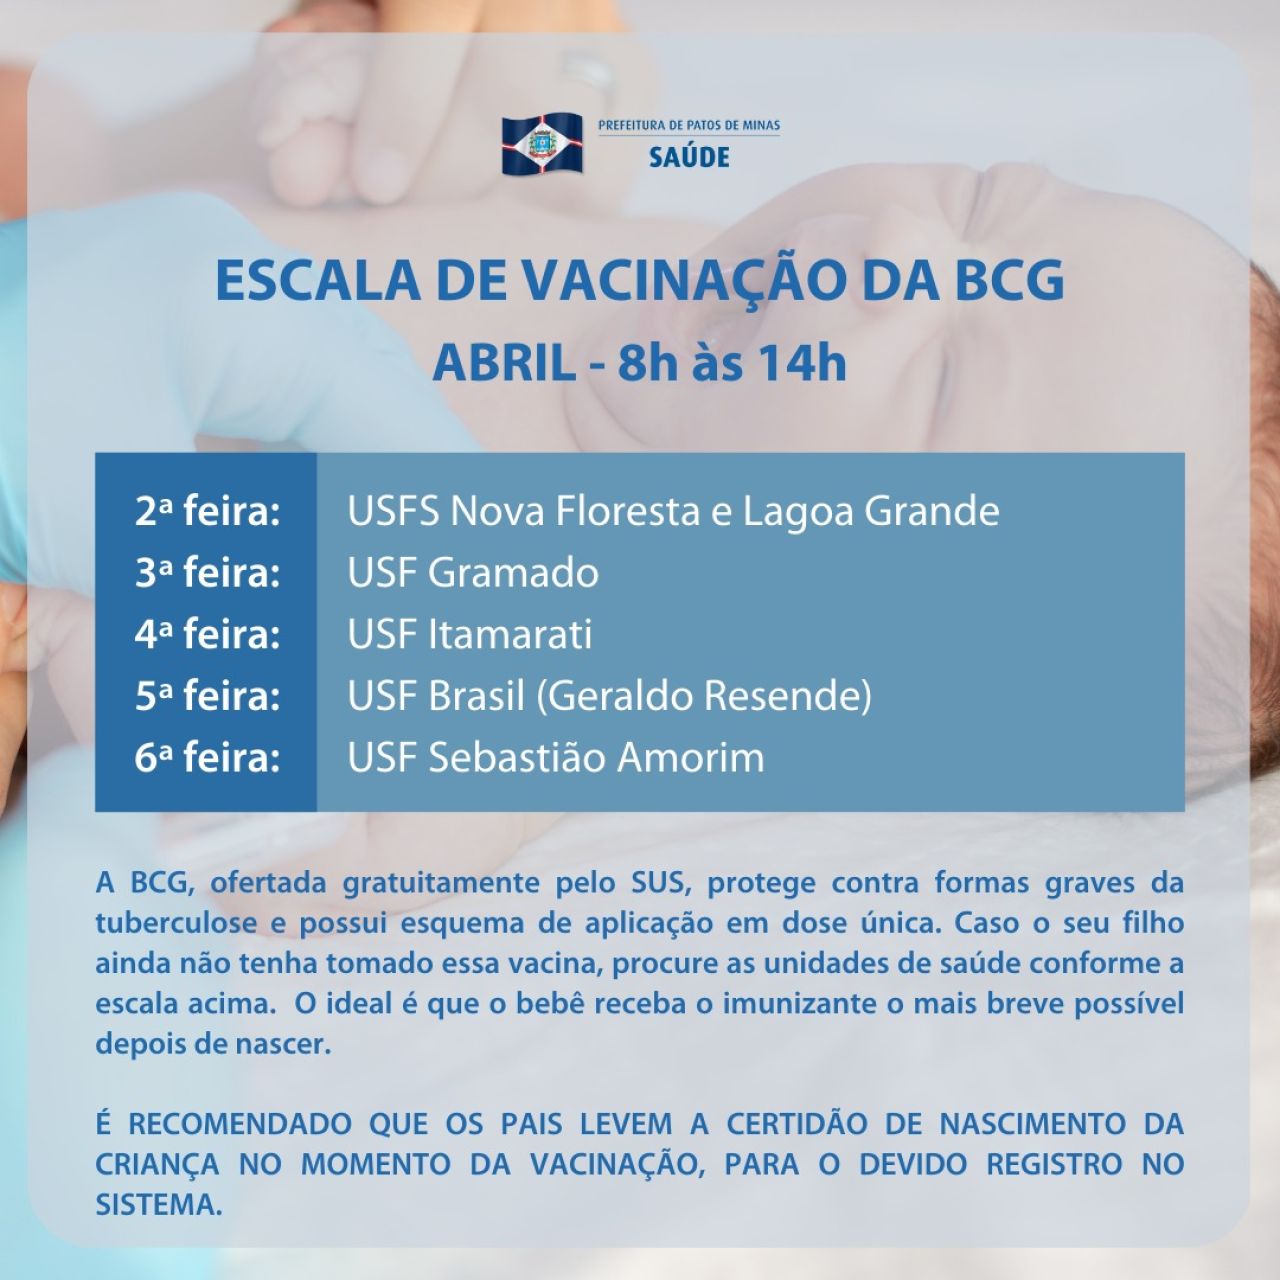 Atenção para a escala de vacinação da BCG em abril